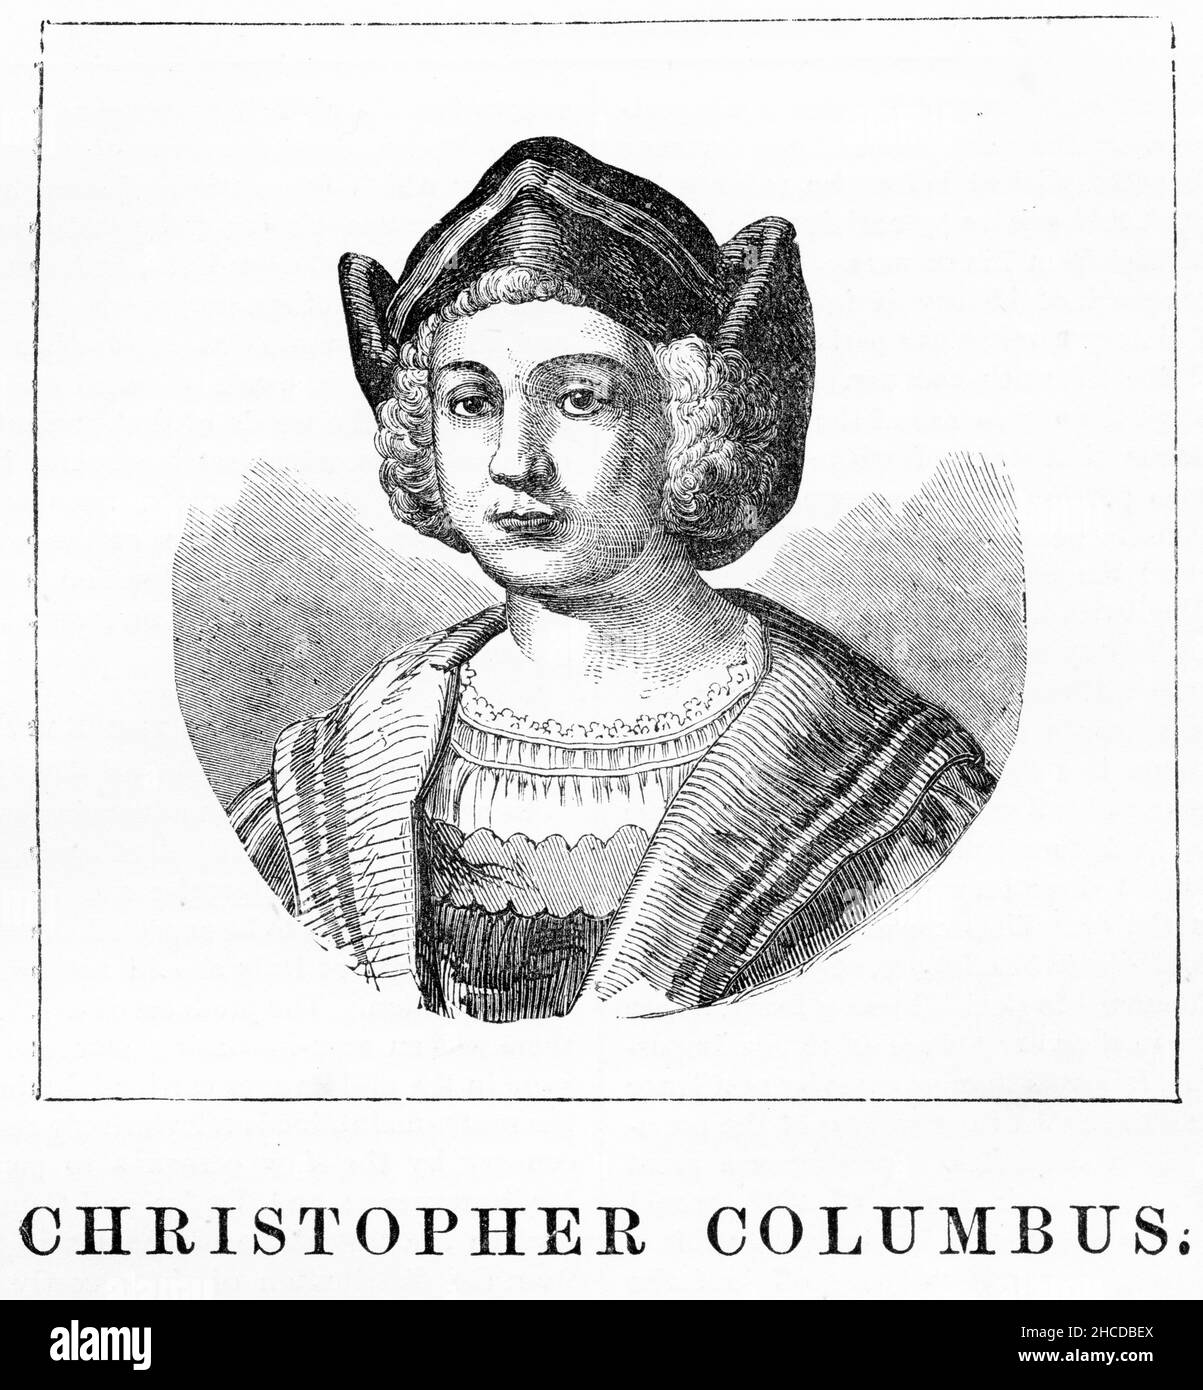 Stich eines jungen Christoph Kolumbus ( 1451 - 1506), italienischer Entdecker und Seefahrer, der vier Reisen über den Atlantischen Ozean absolvierte und damit den Weg für die weit verbreitete europäische Erkundung und Kolonisierung Amerikas öffnete. Stockfoto